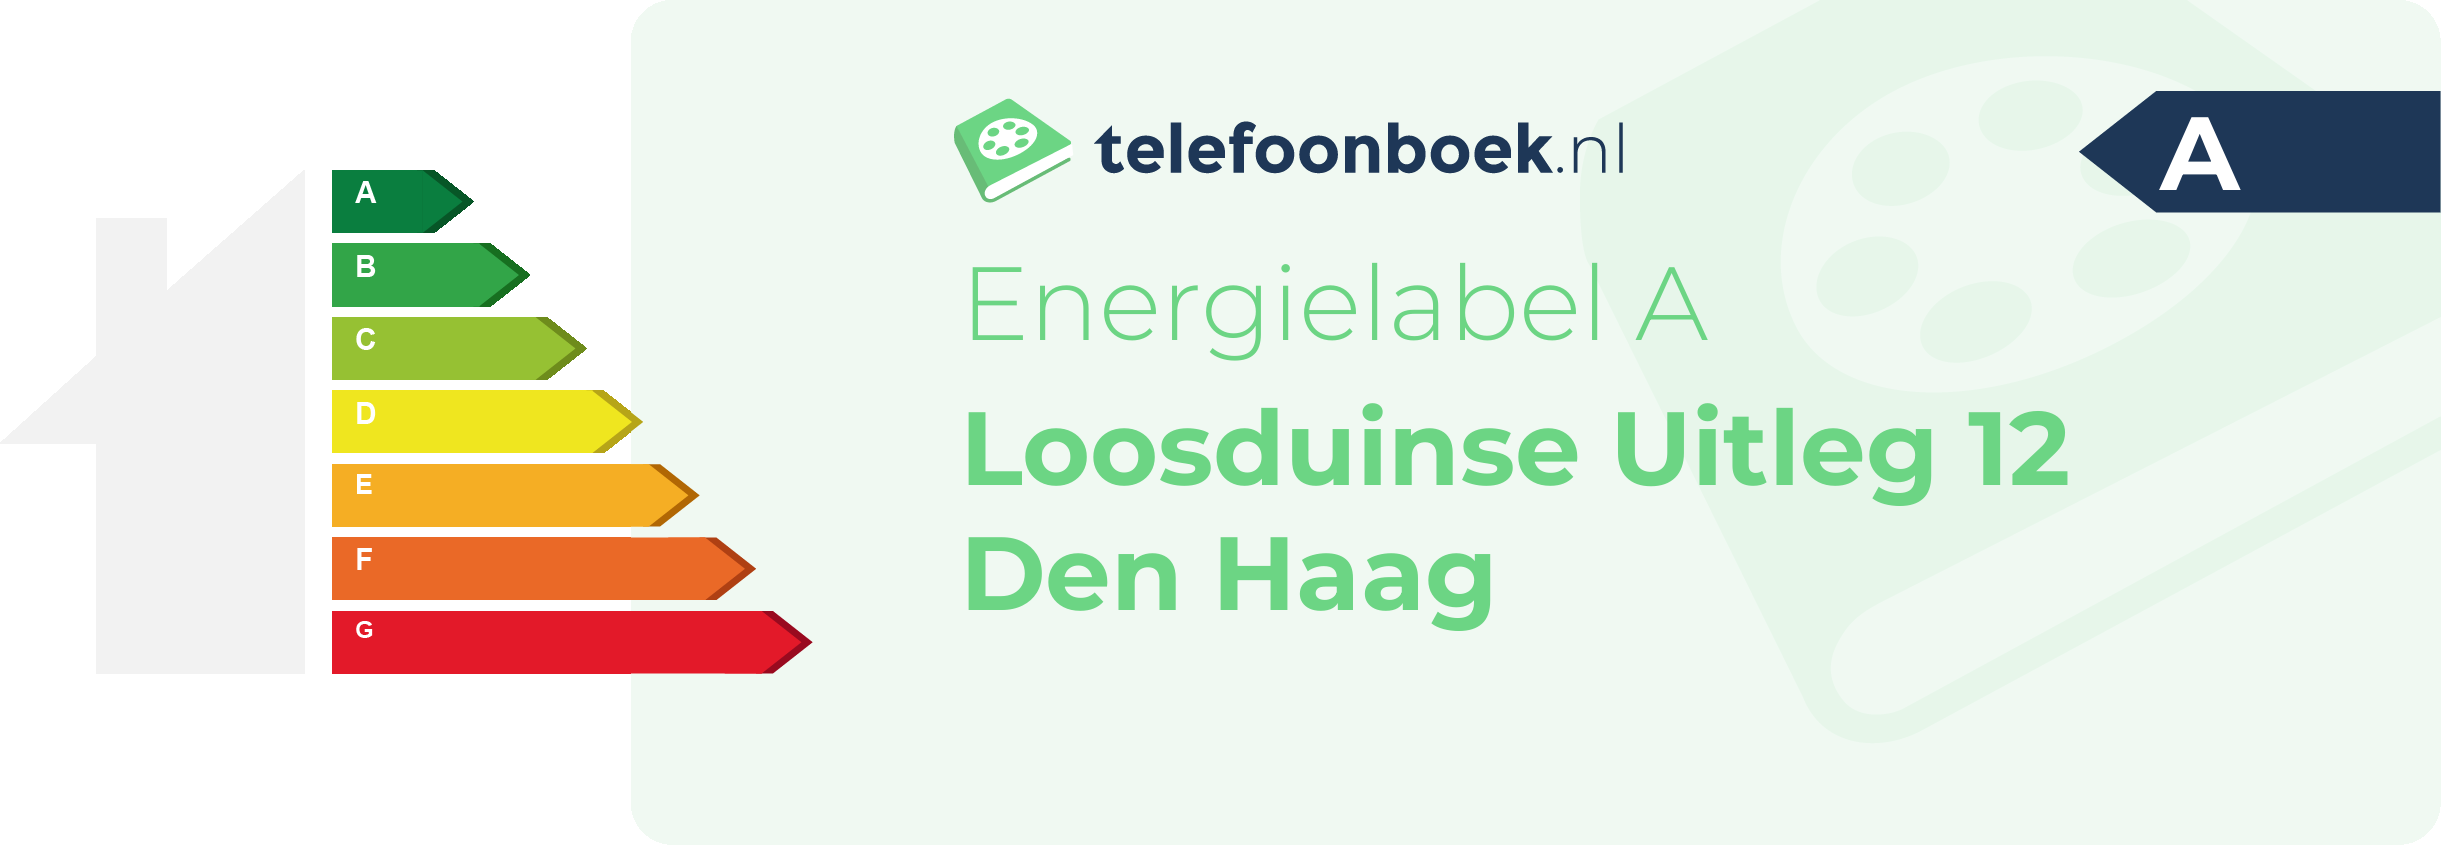 Energielabel Loosduinse Uitleg 12 Den Haag